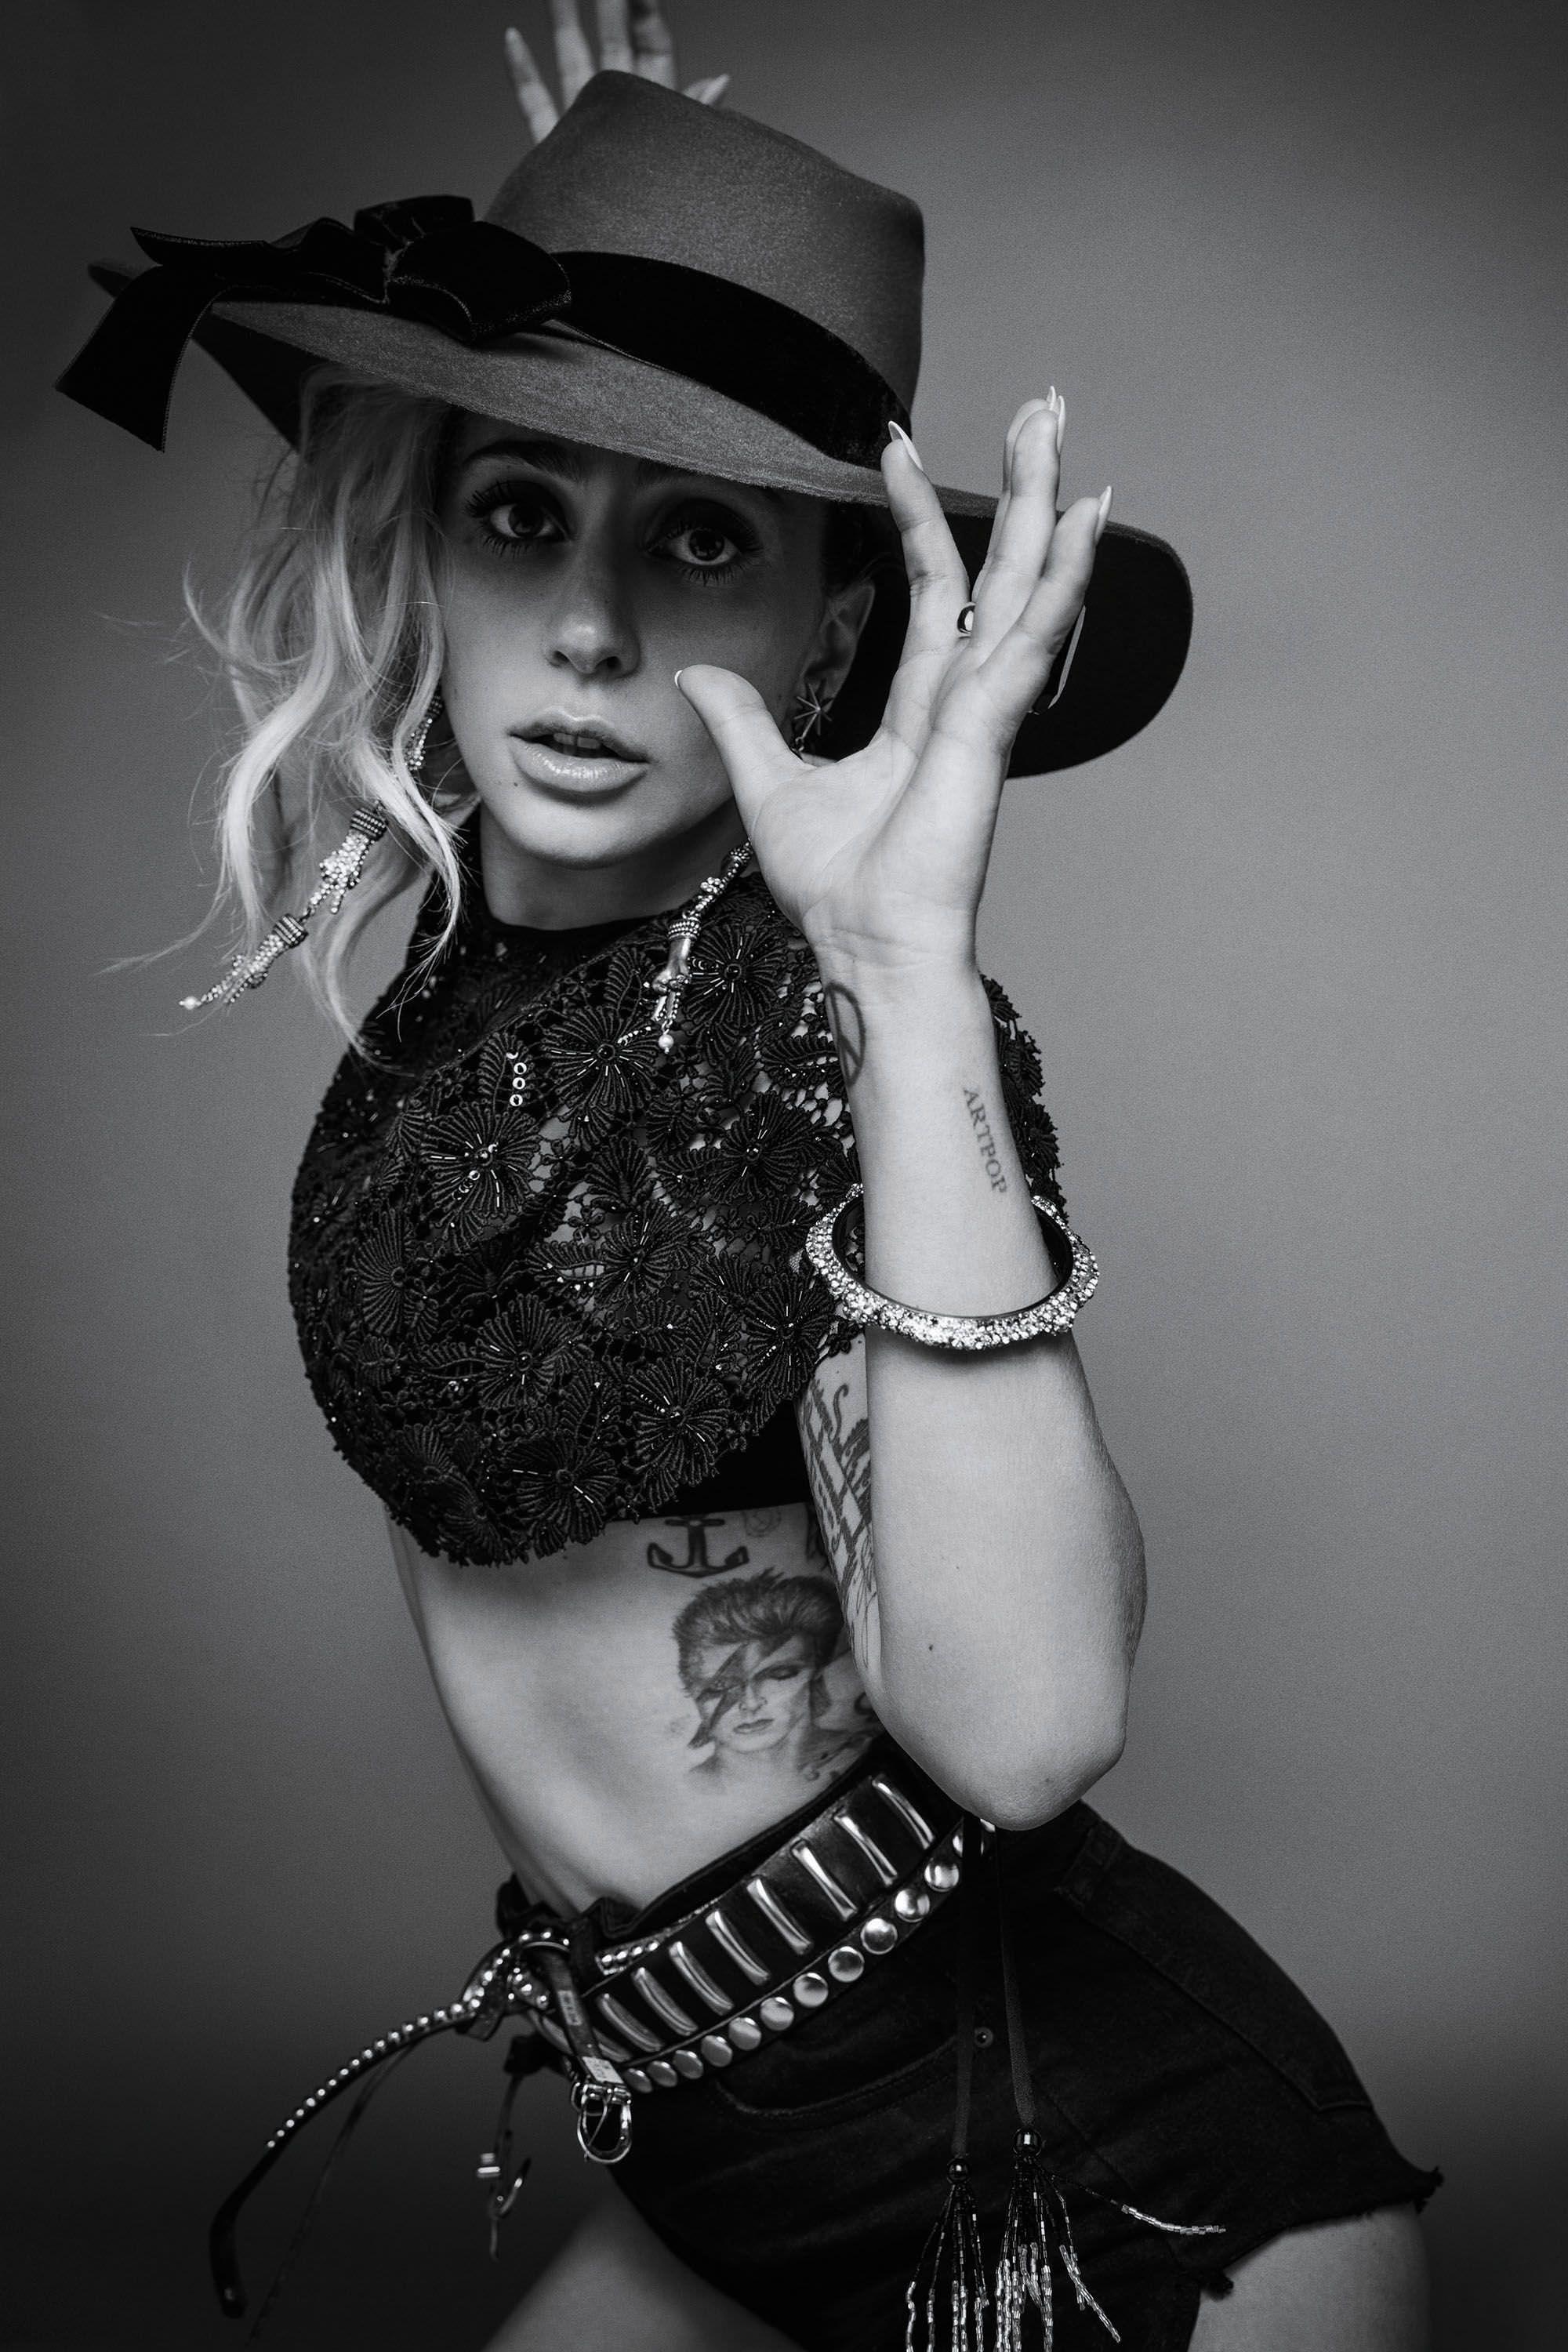 Joanne Lady Gaga Wallpapers Top Free Joanne Lady Gaga